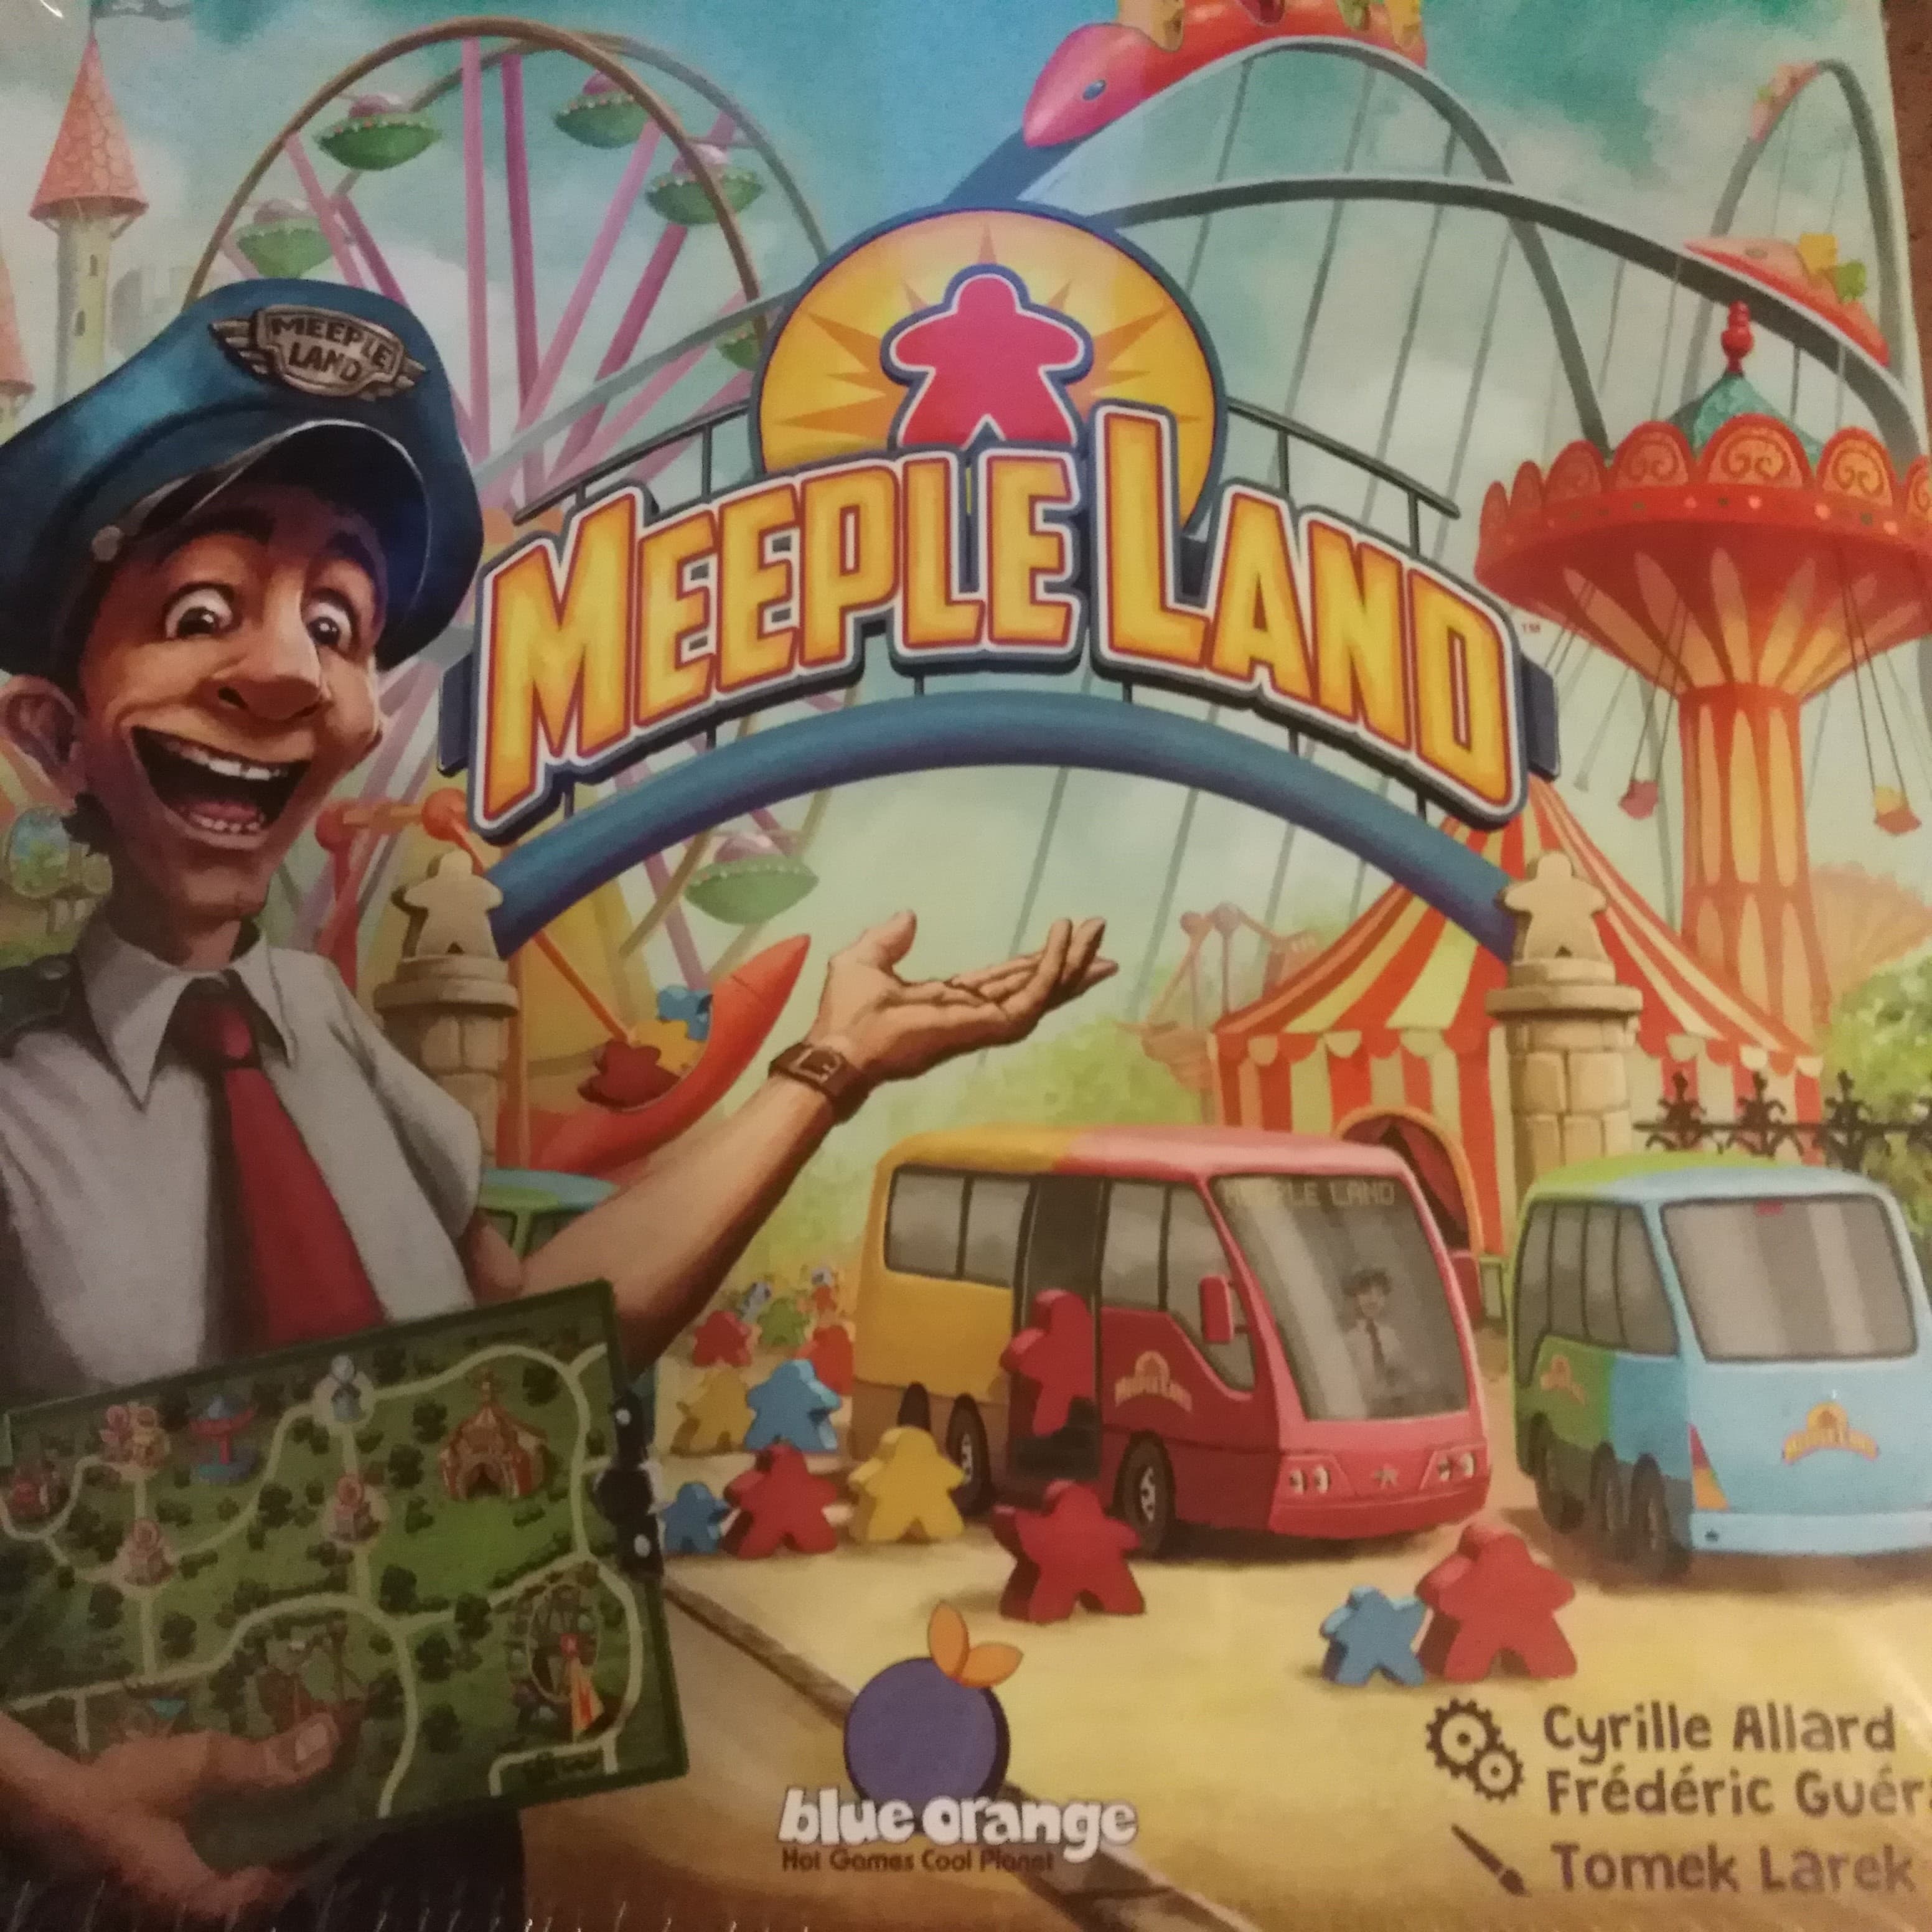 MEEPLELAND: enfin un jeu pour les Meeples !